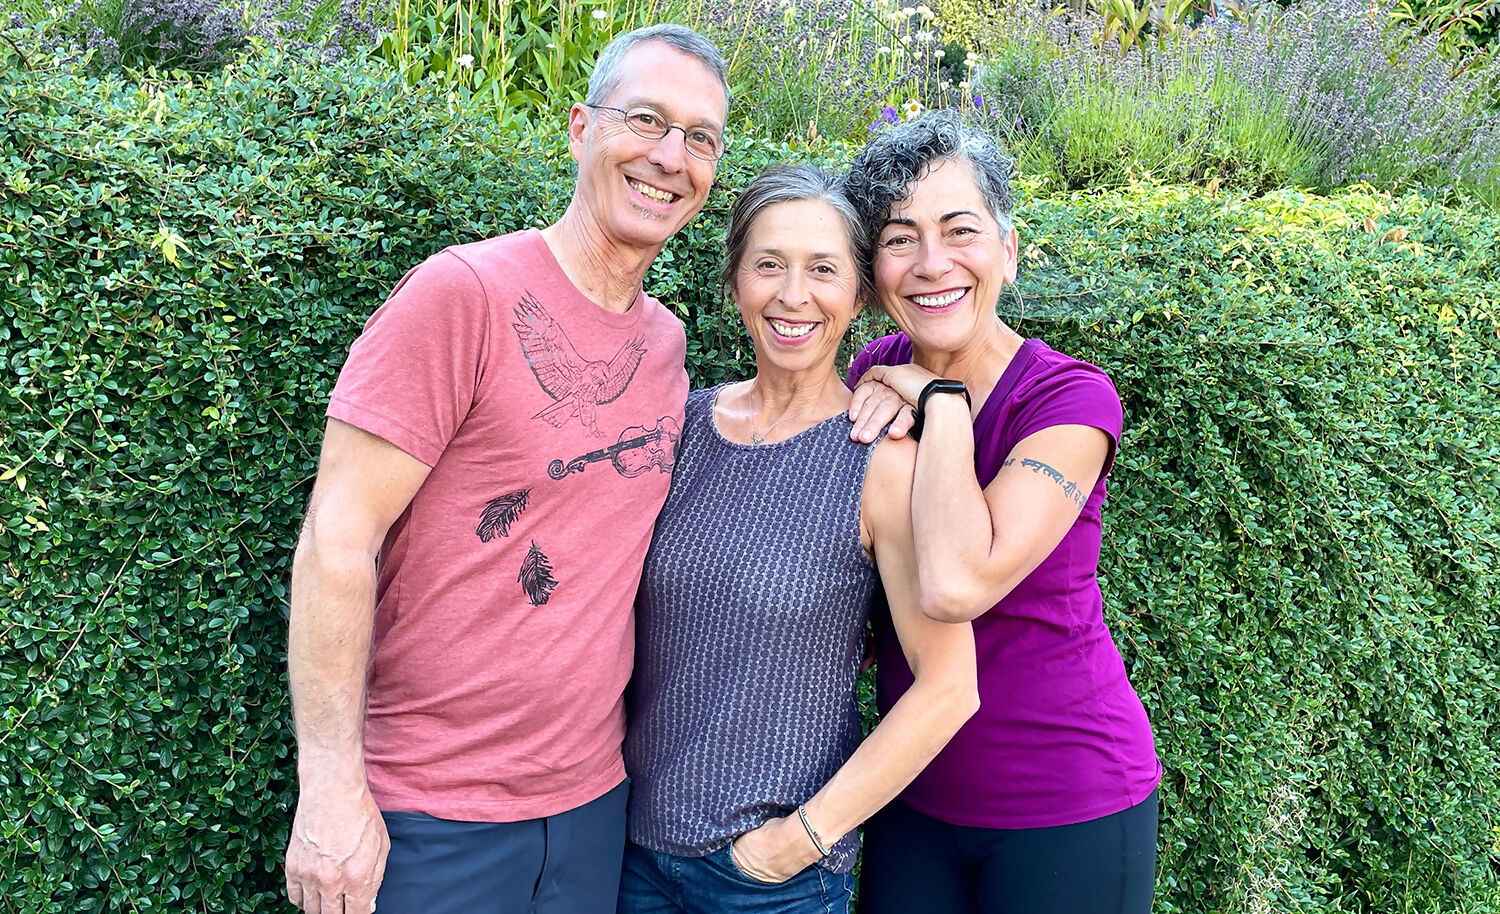 Melina, Baxter, and Chiara Yoga